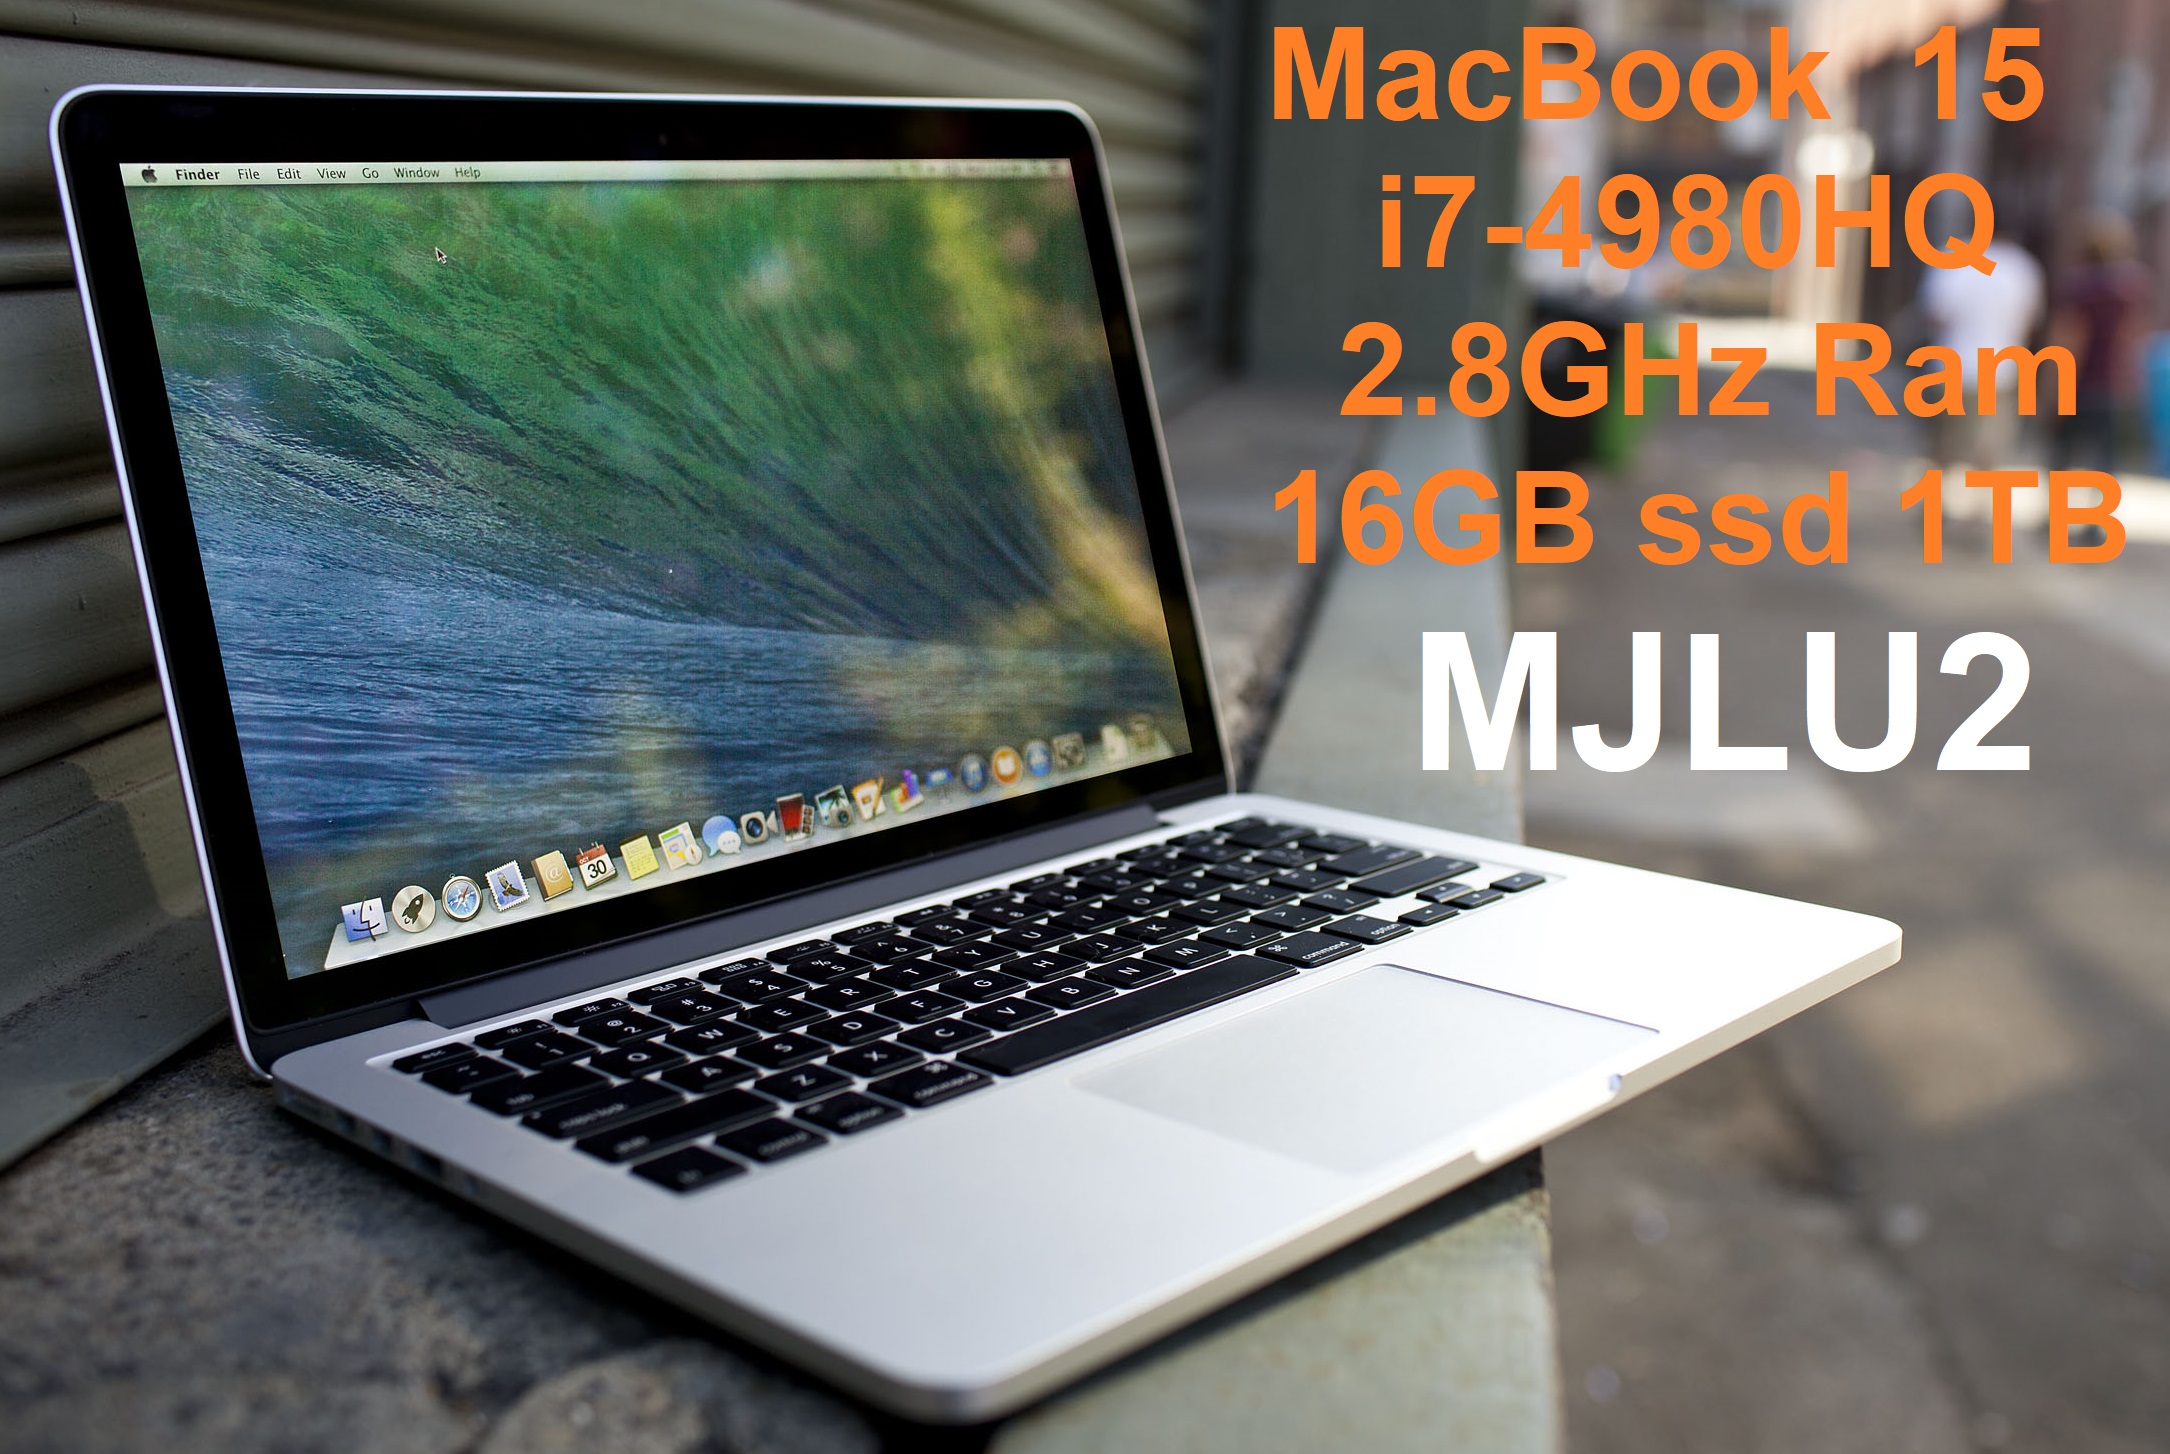 MacBook Pro Core i7/RAM 16GB/SSD 1TB